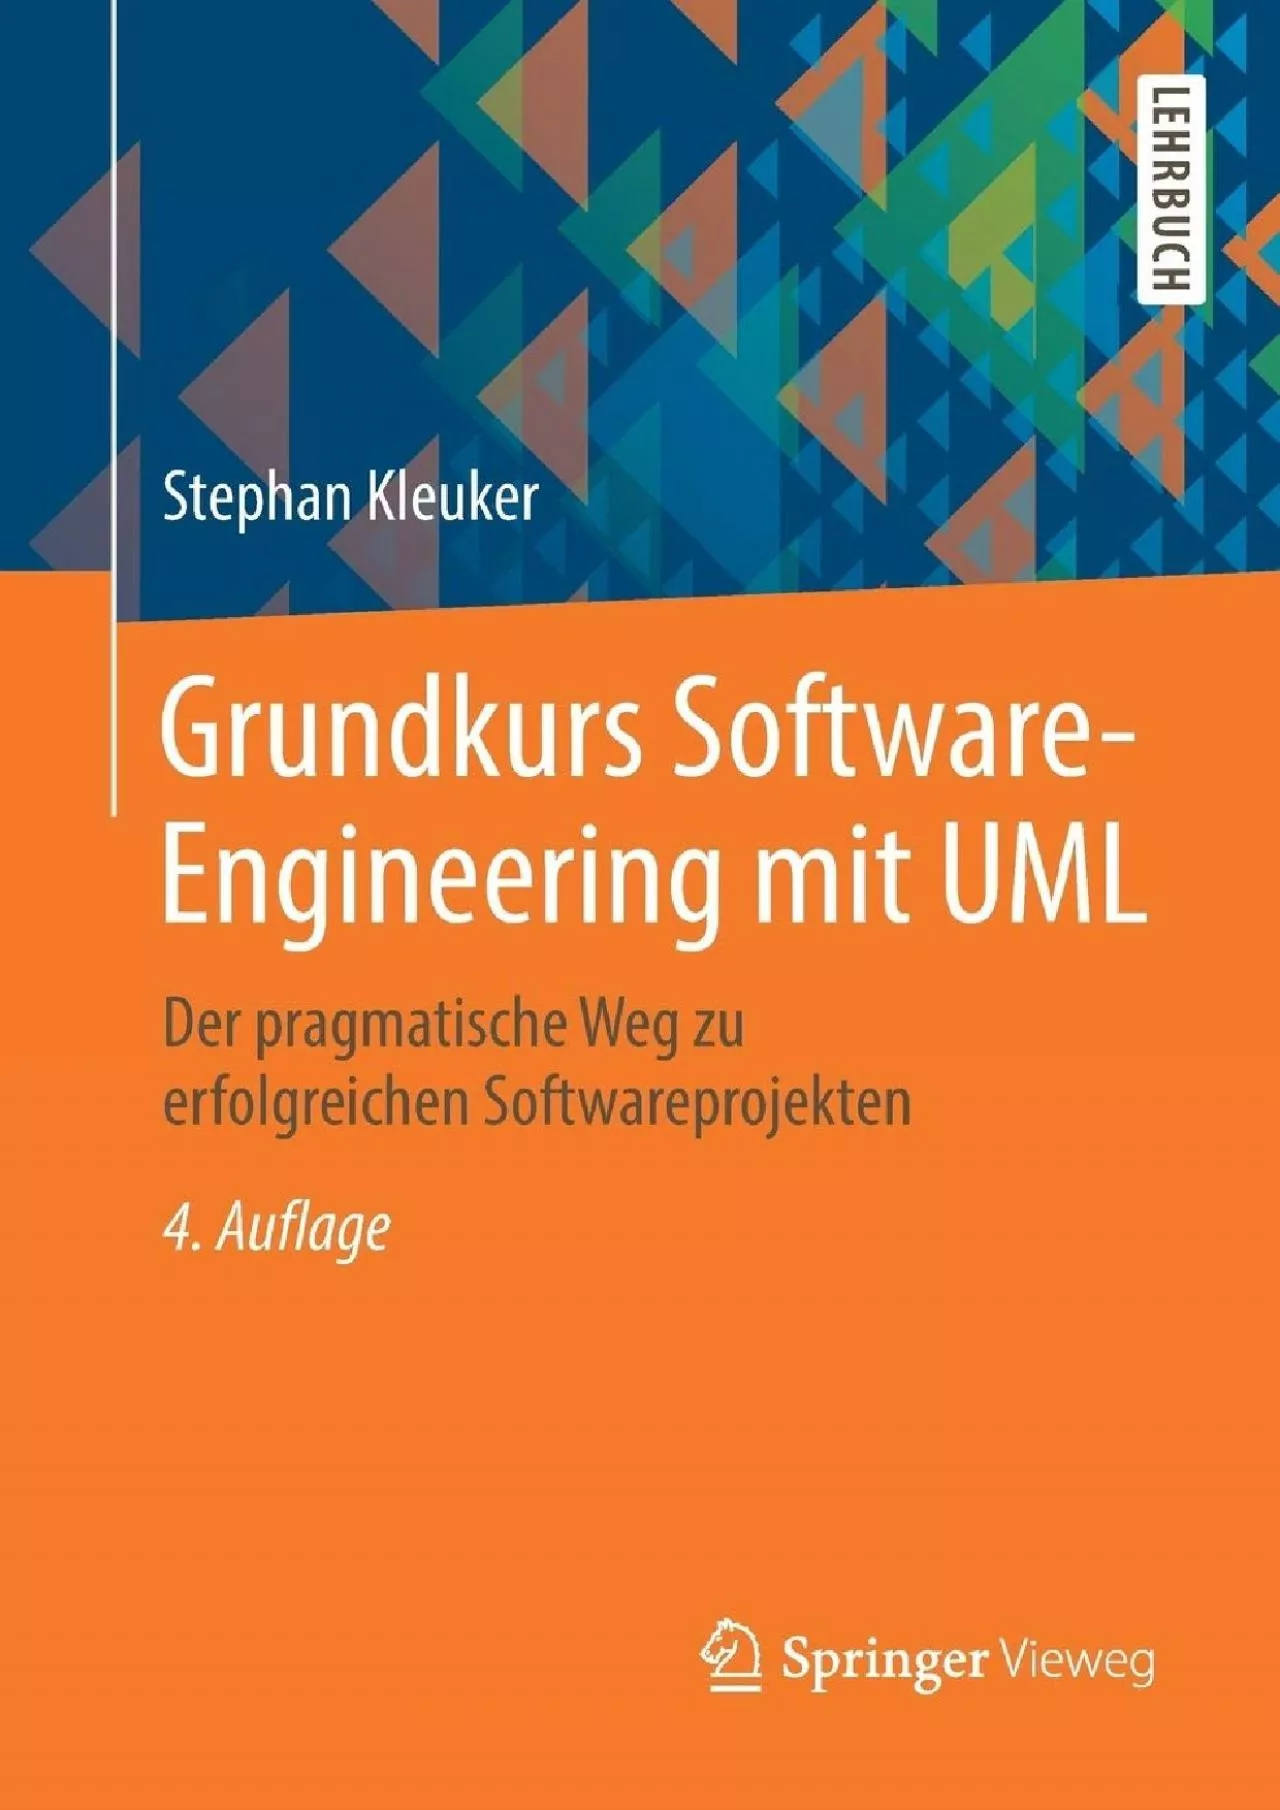 [PDF]-Grundkurs Software-Engineering mit UML: Der pragmatische Weg zu erfolgreichen Softwareprojekten